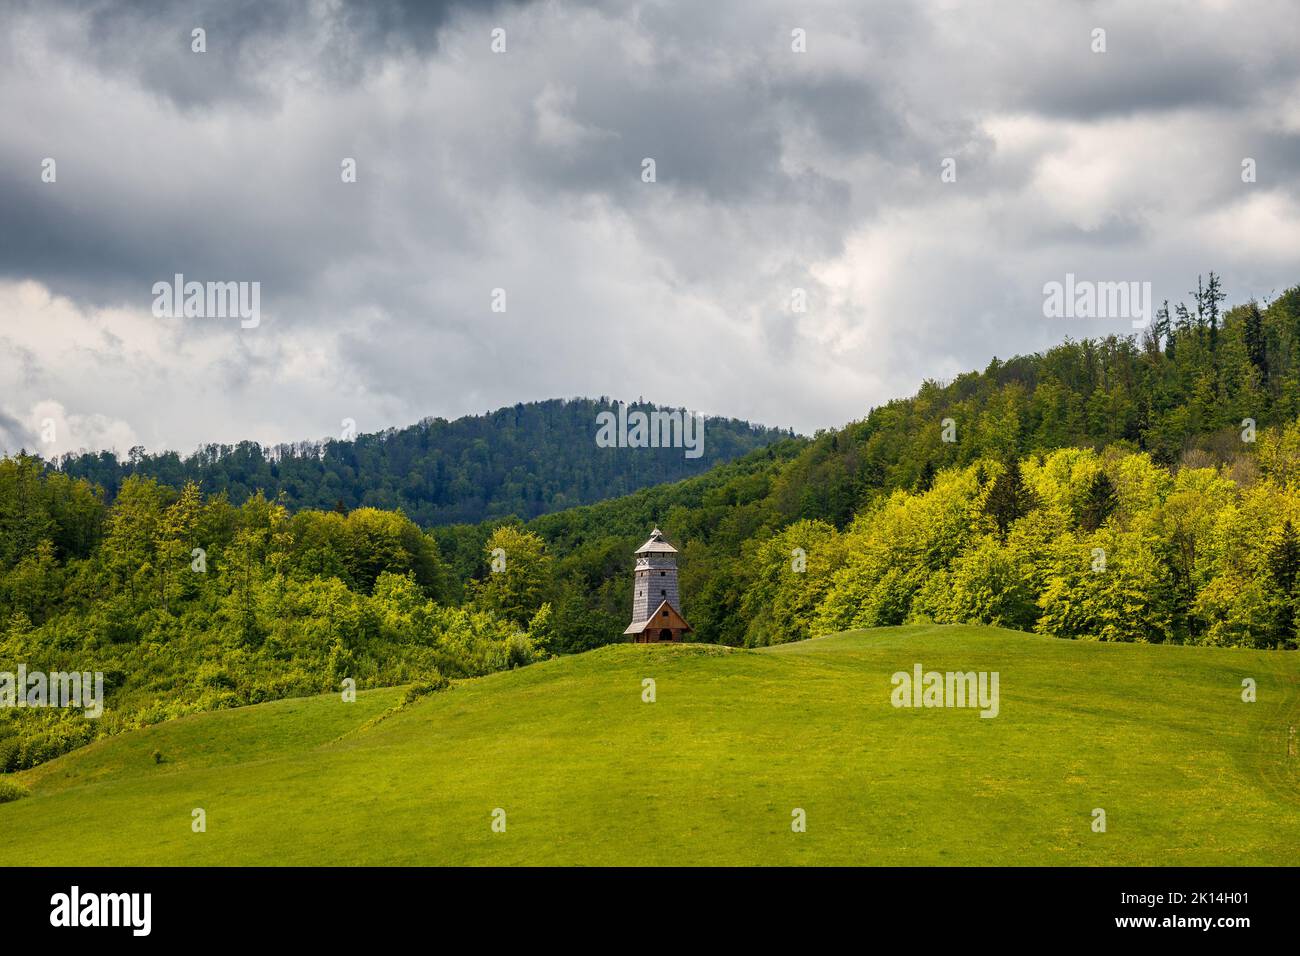 Paesaggio primaverile di prati e boschi. La torre di osservazione di Zbojska nella pianura di Muran nella Slovacchia centrale, in Europa. Foto Stock